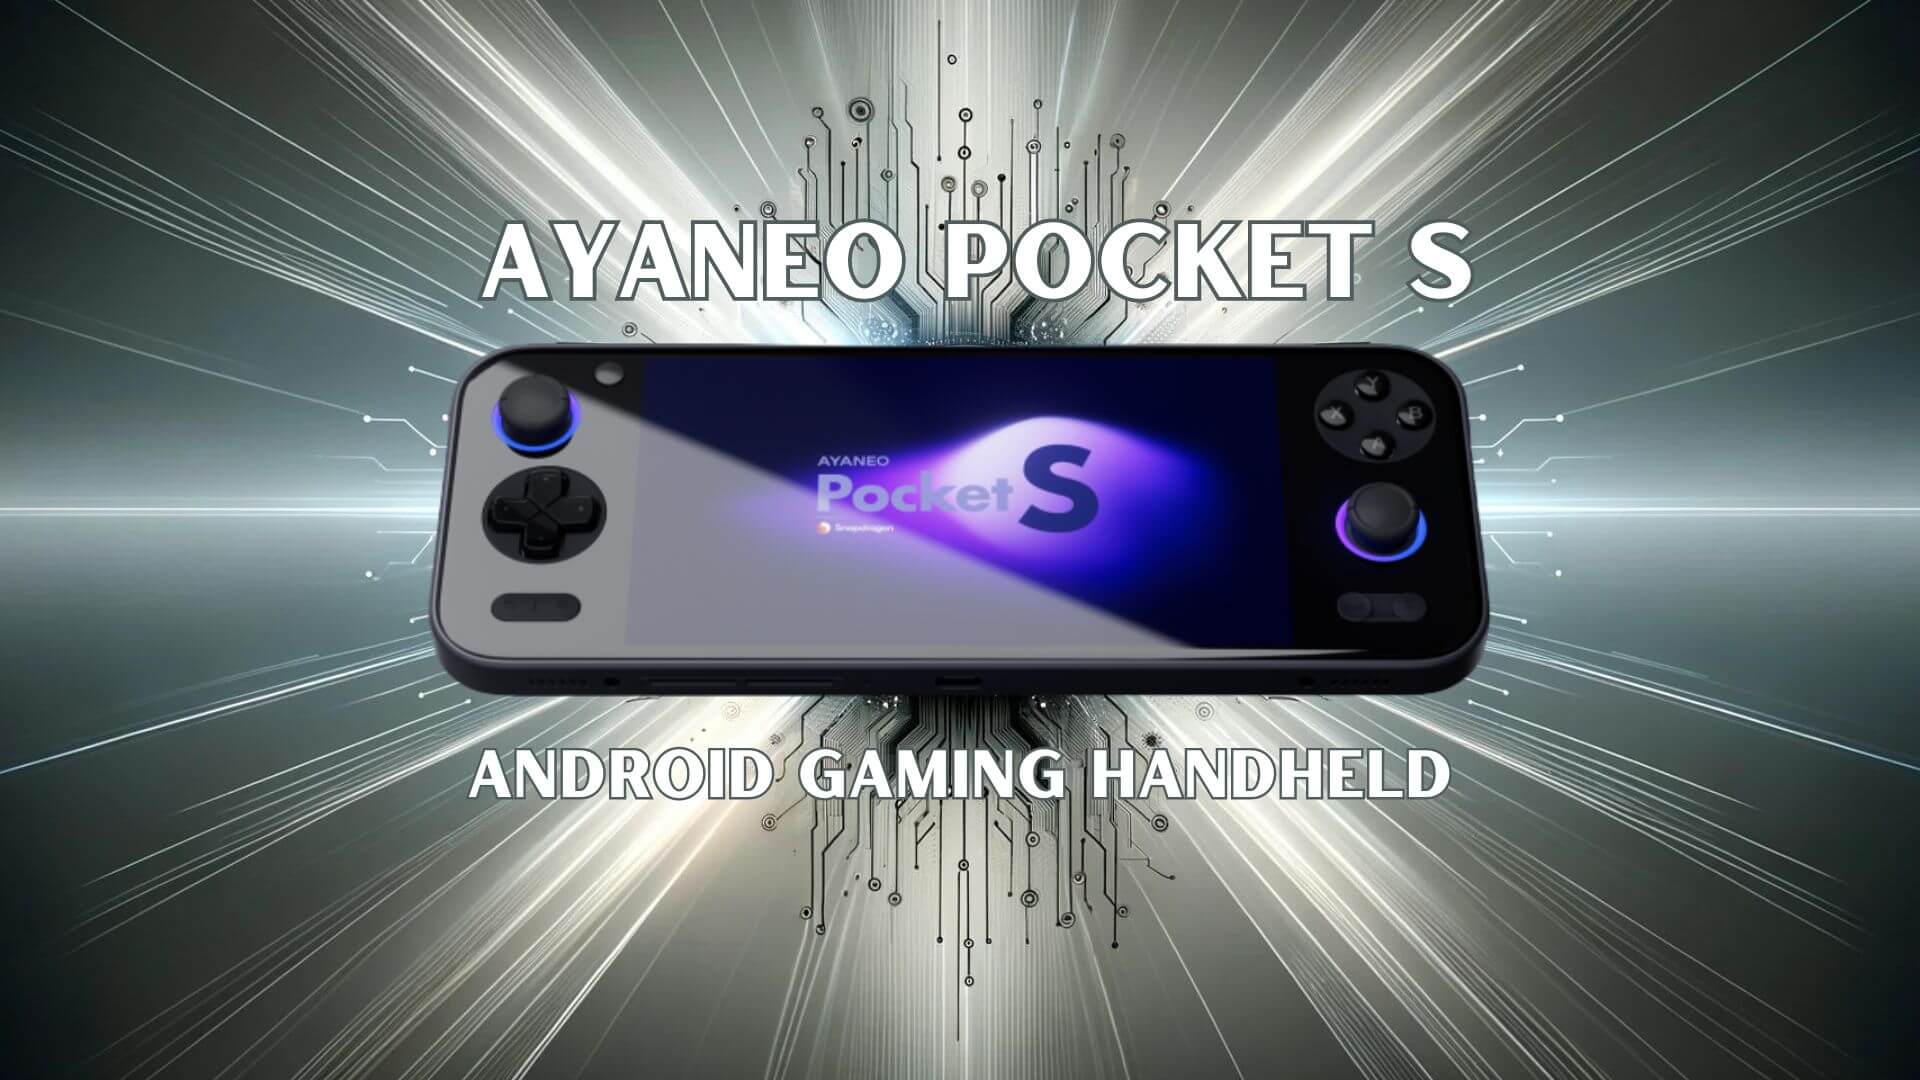 AYANEO Pocket S jest już dostępny w przedsprzedaży - najnowszy handheld do gier z Androidem generacji Snapdragon